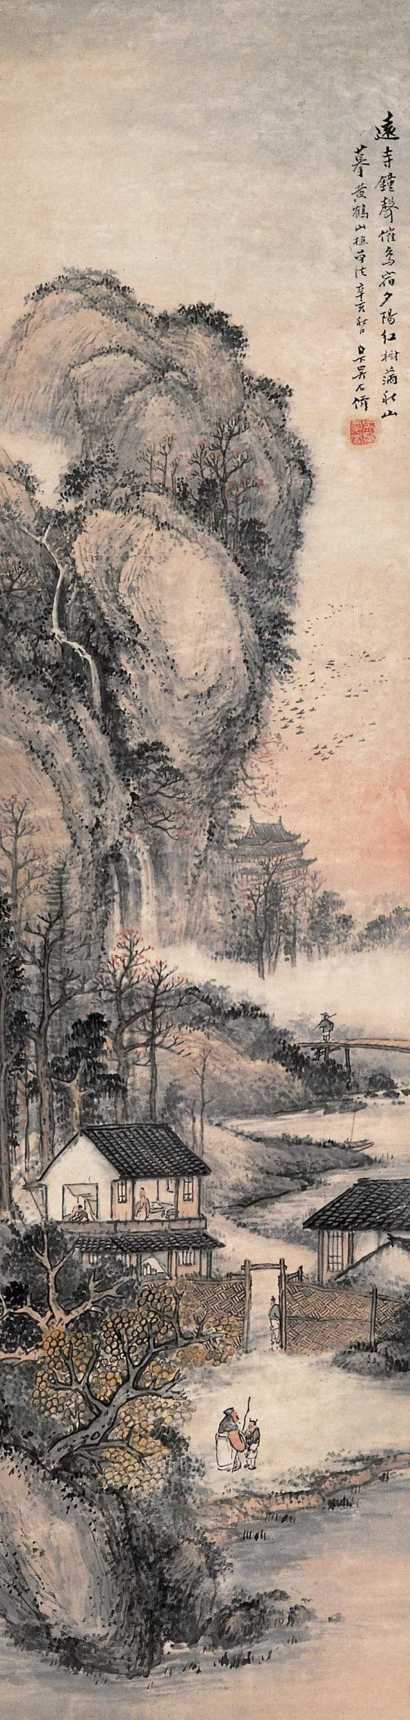 吴石僊 辛亥(1911)年作 红树秋山 立轴